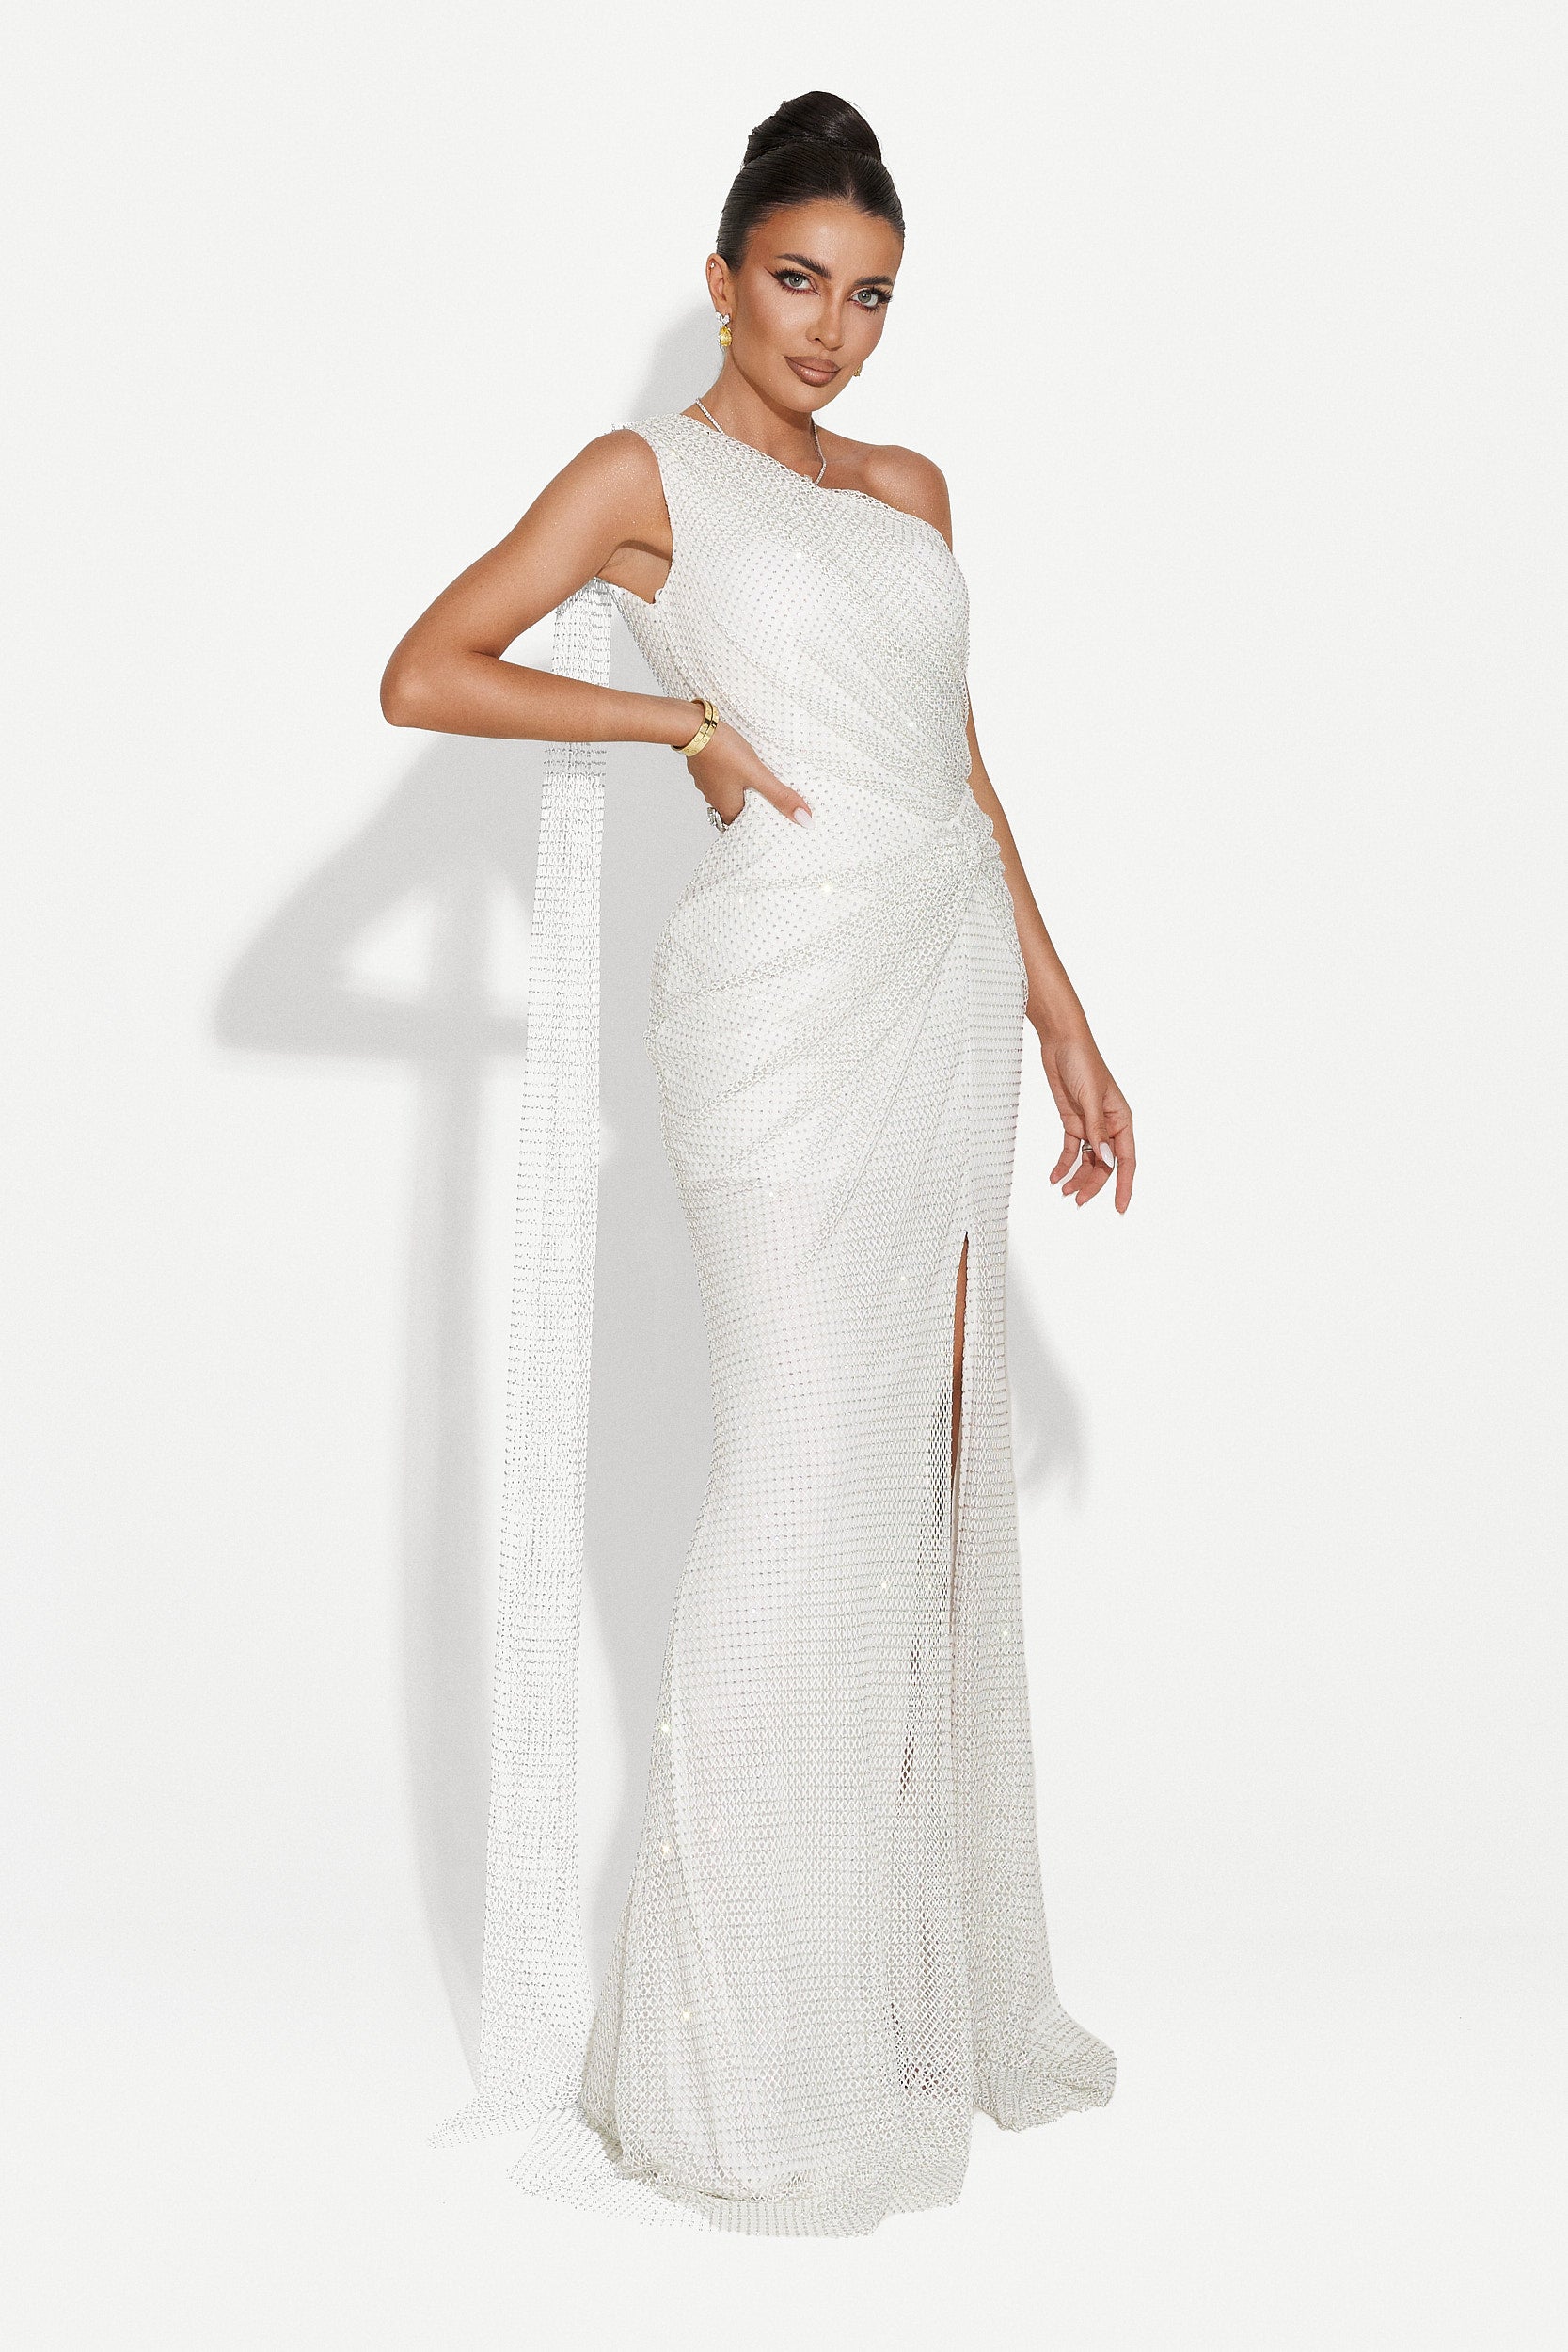 Casida Bogas hosszú fehér női ruha